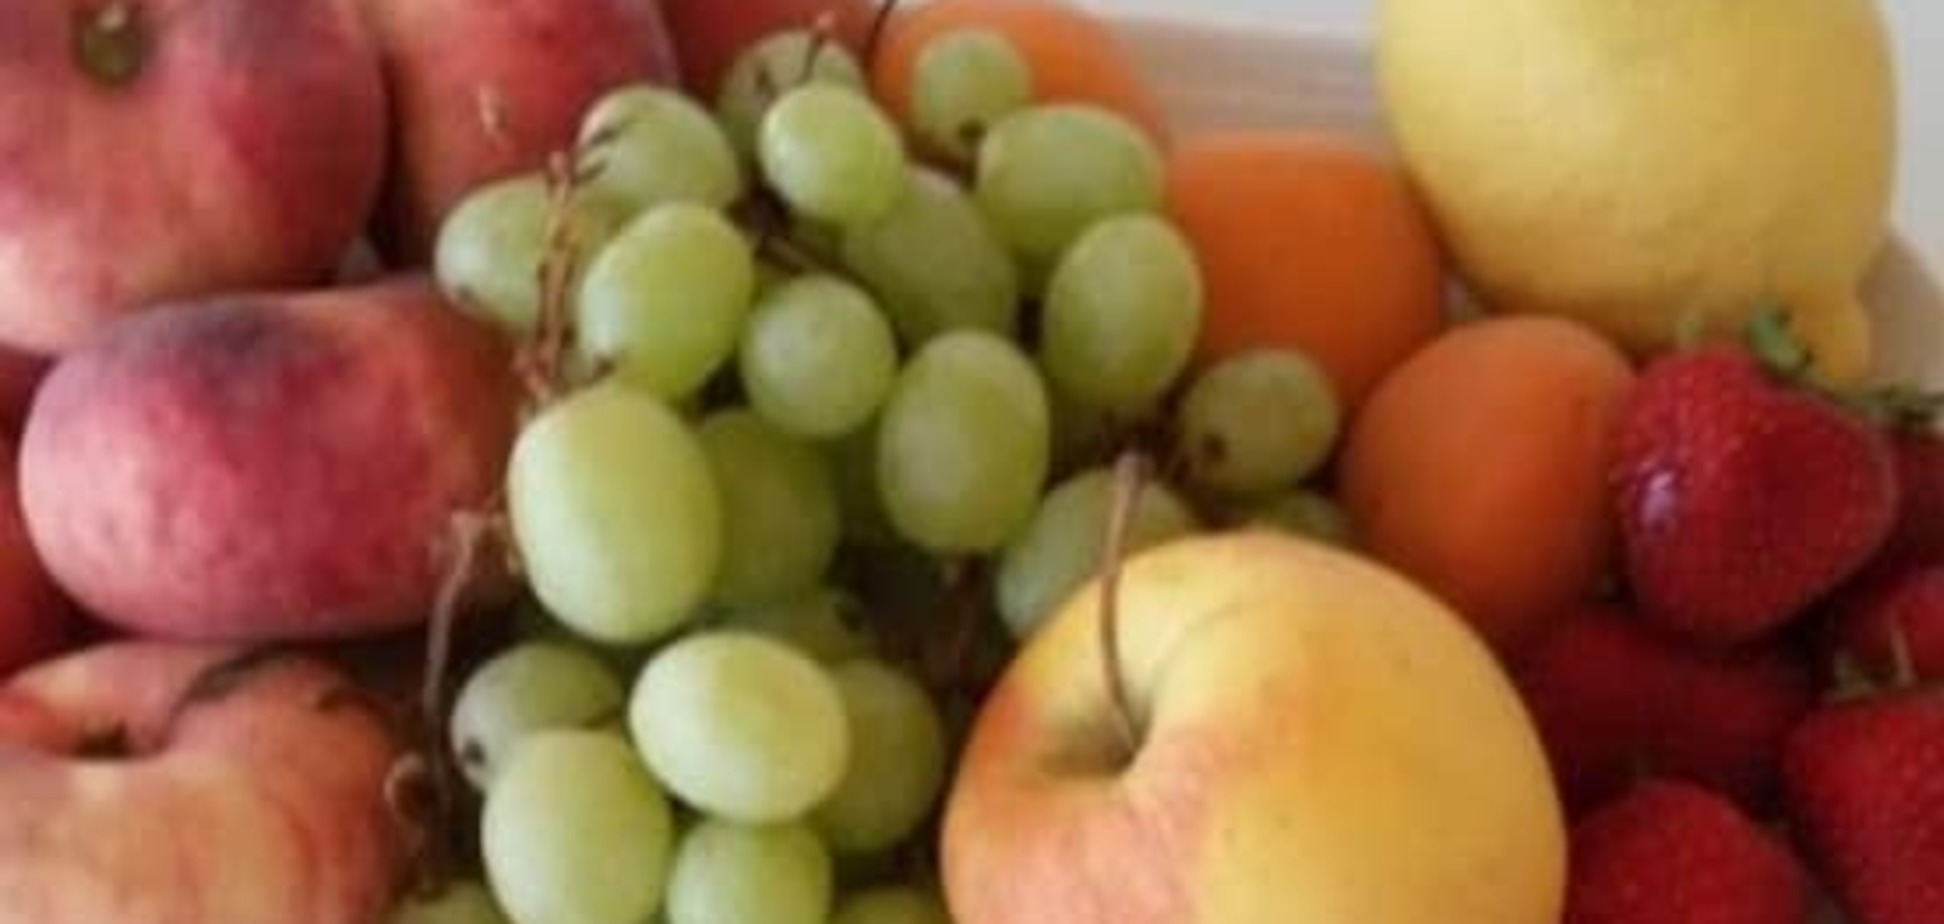 Моем правильно: эксперты рассказали, как избавиться от вредных веществ на овощах, фруктах и ягодах